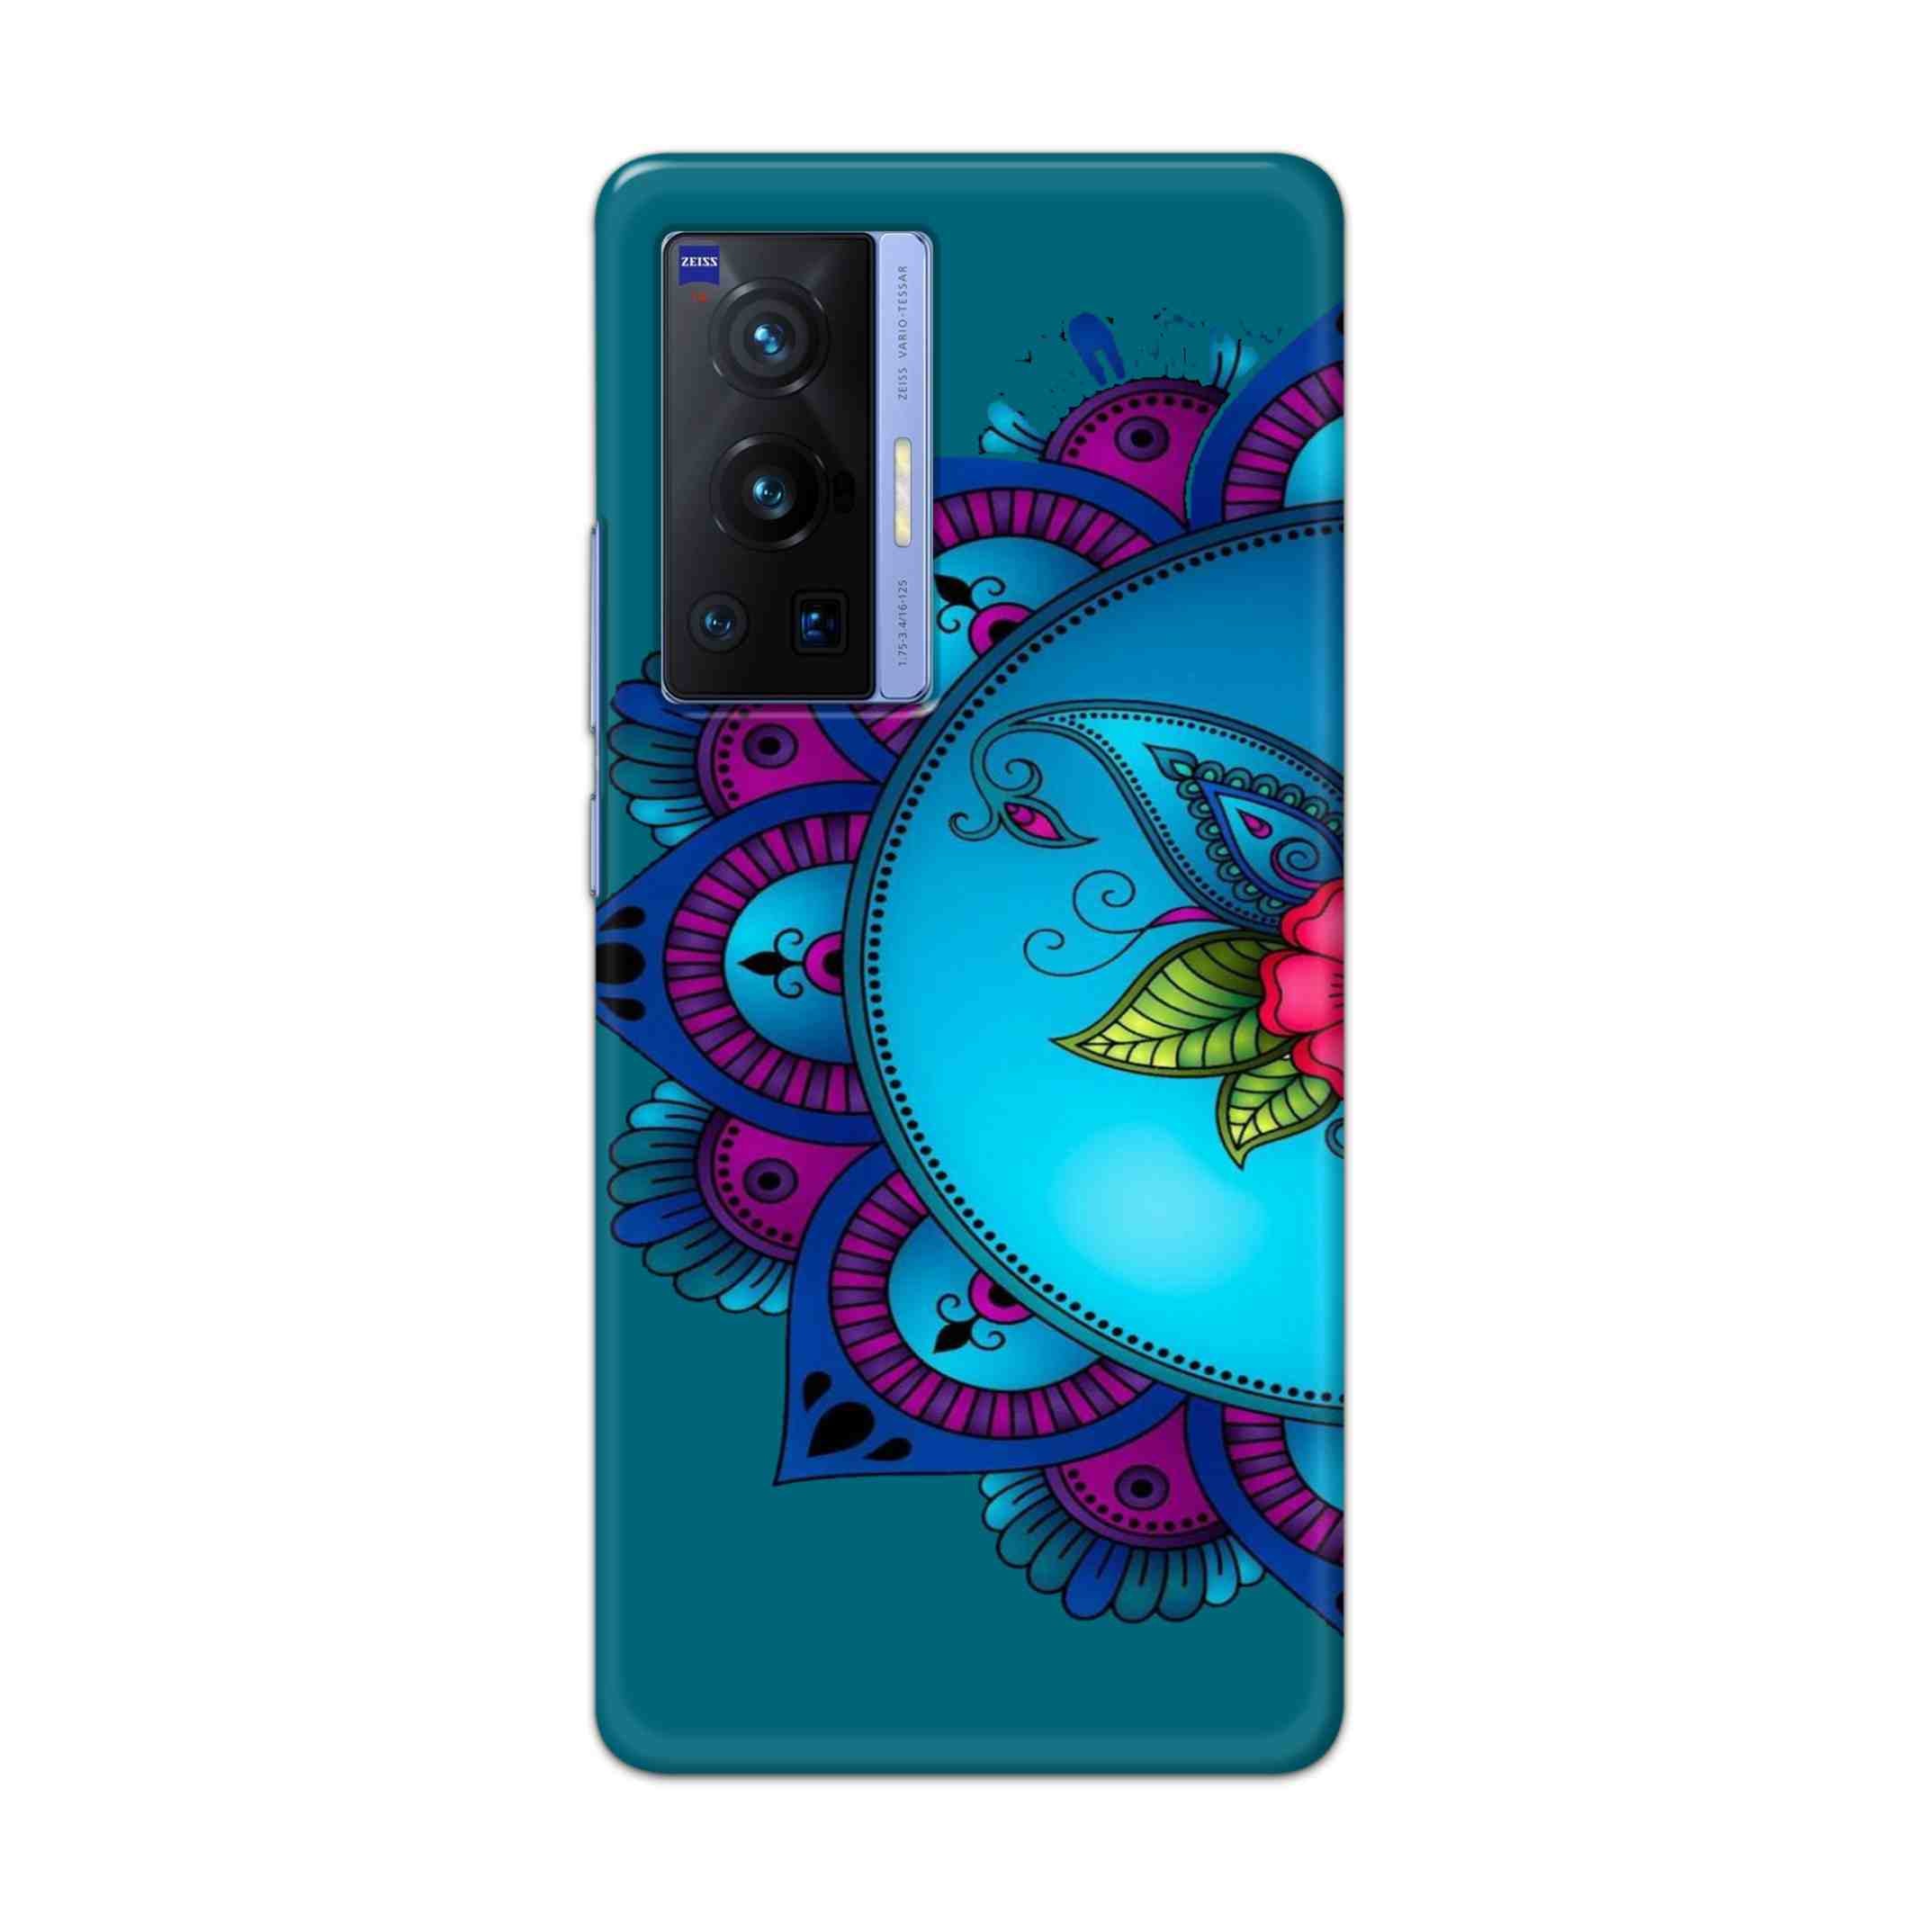 Buy Star Mandala Hard Back Mobile Phone Case Cover For Vivo X70 Pro Online